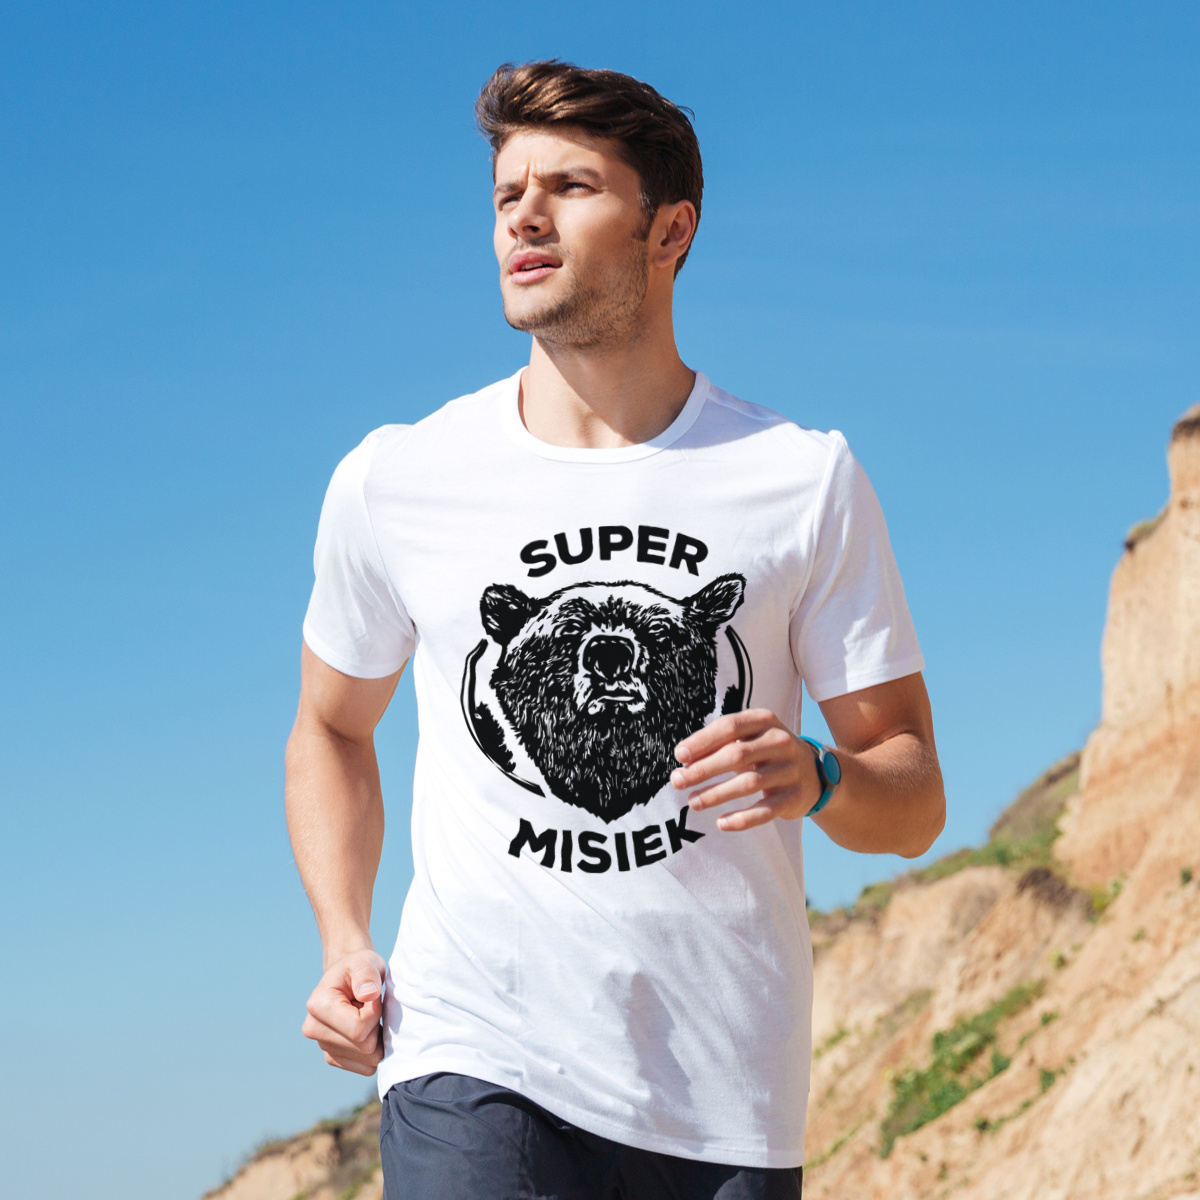 Super Misiek - Męska Koszulka Biała